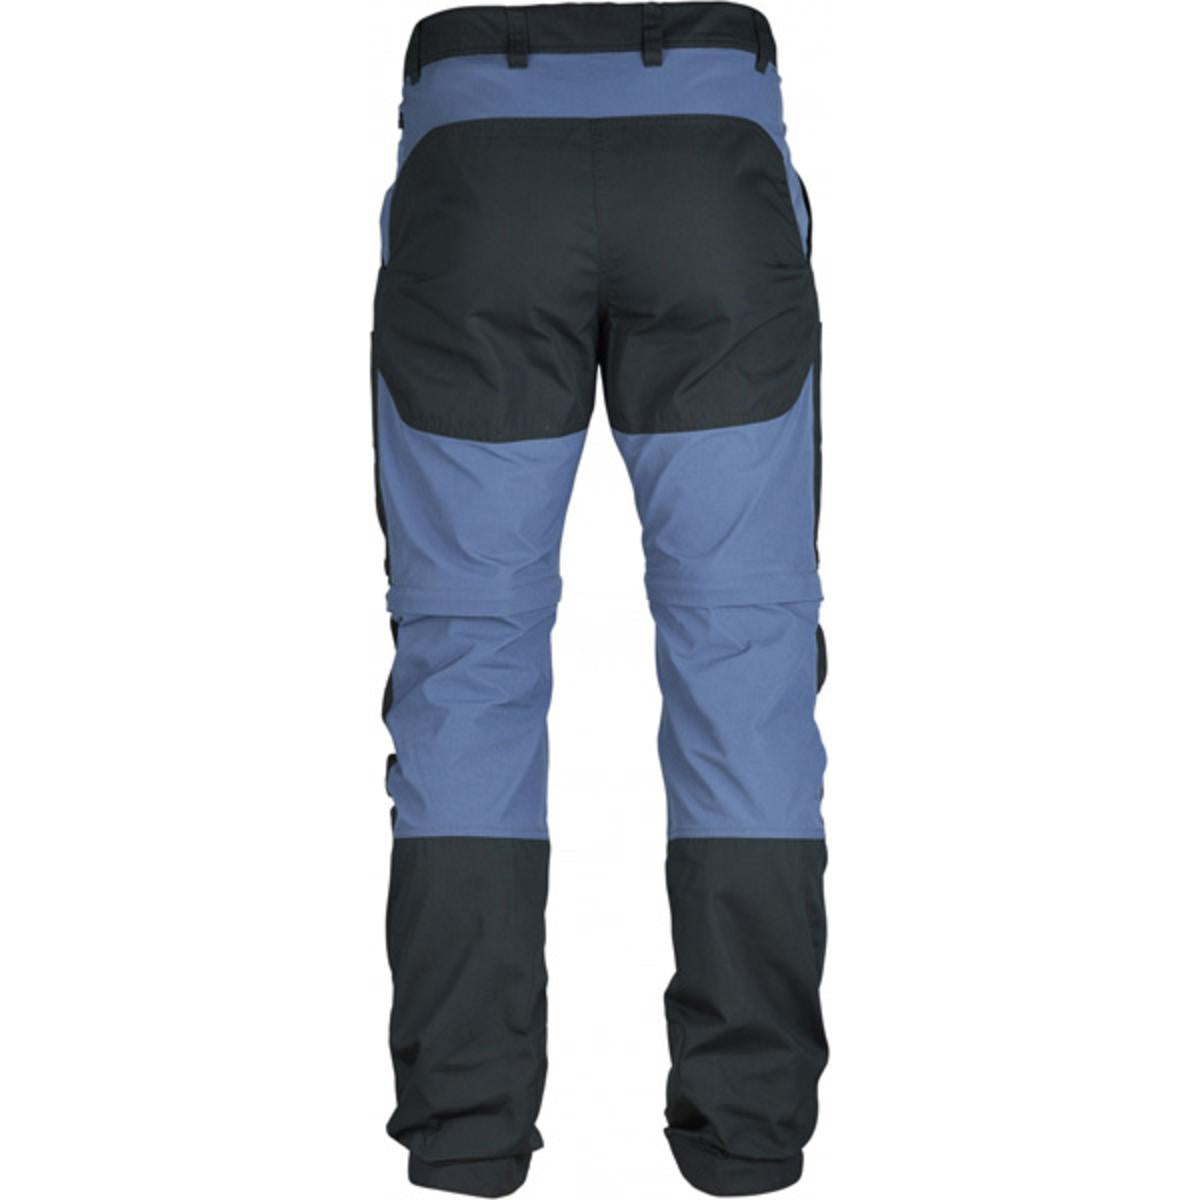 FjallRaven Men's Abisko Lite Trekking Zip-Off Trousers Regular